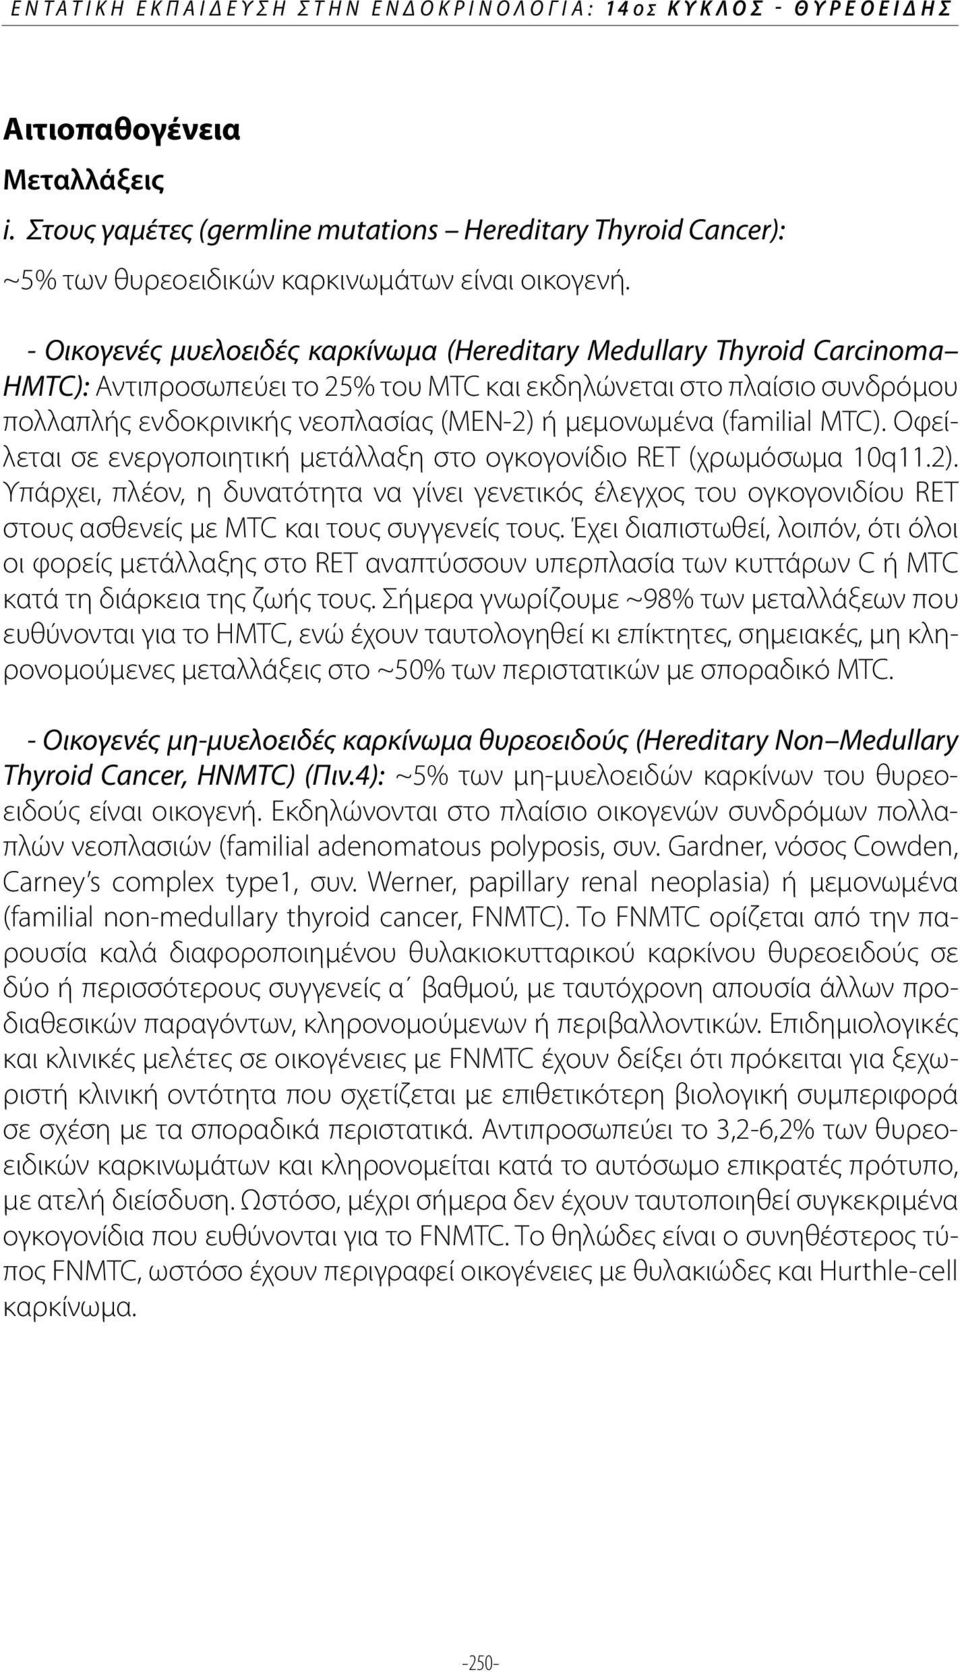 - Οικογενές μυελοειδές καρκίνωμα (Hereditary Medullary Thyroid Carcinoma HMTC): Αντιπροσωπεύει το 25% του MTC και εκδηλώνεται στο πλαίσιο συνδρόμου πολλαπλής ενδοκρινικής νεοπλασίας (ΜΕΝ-2) ή